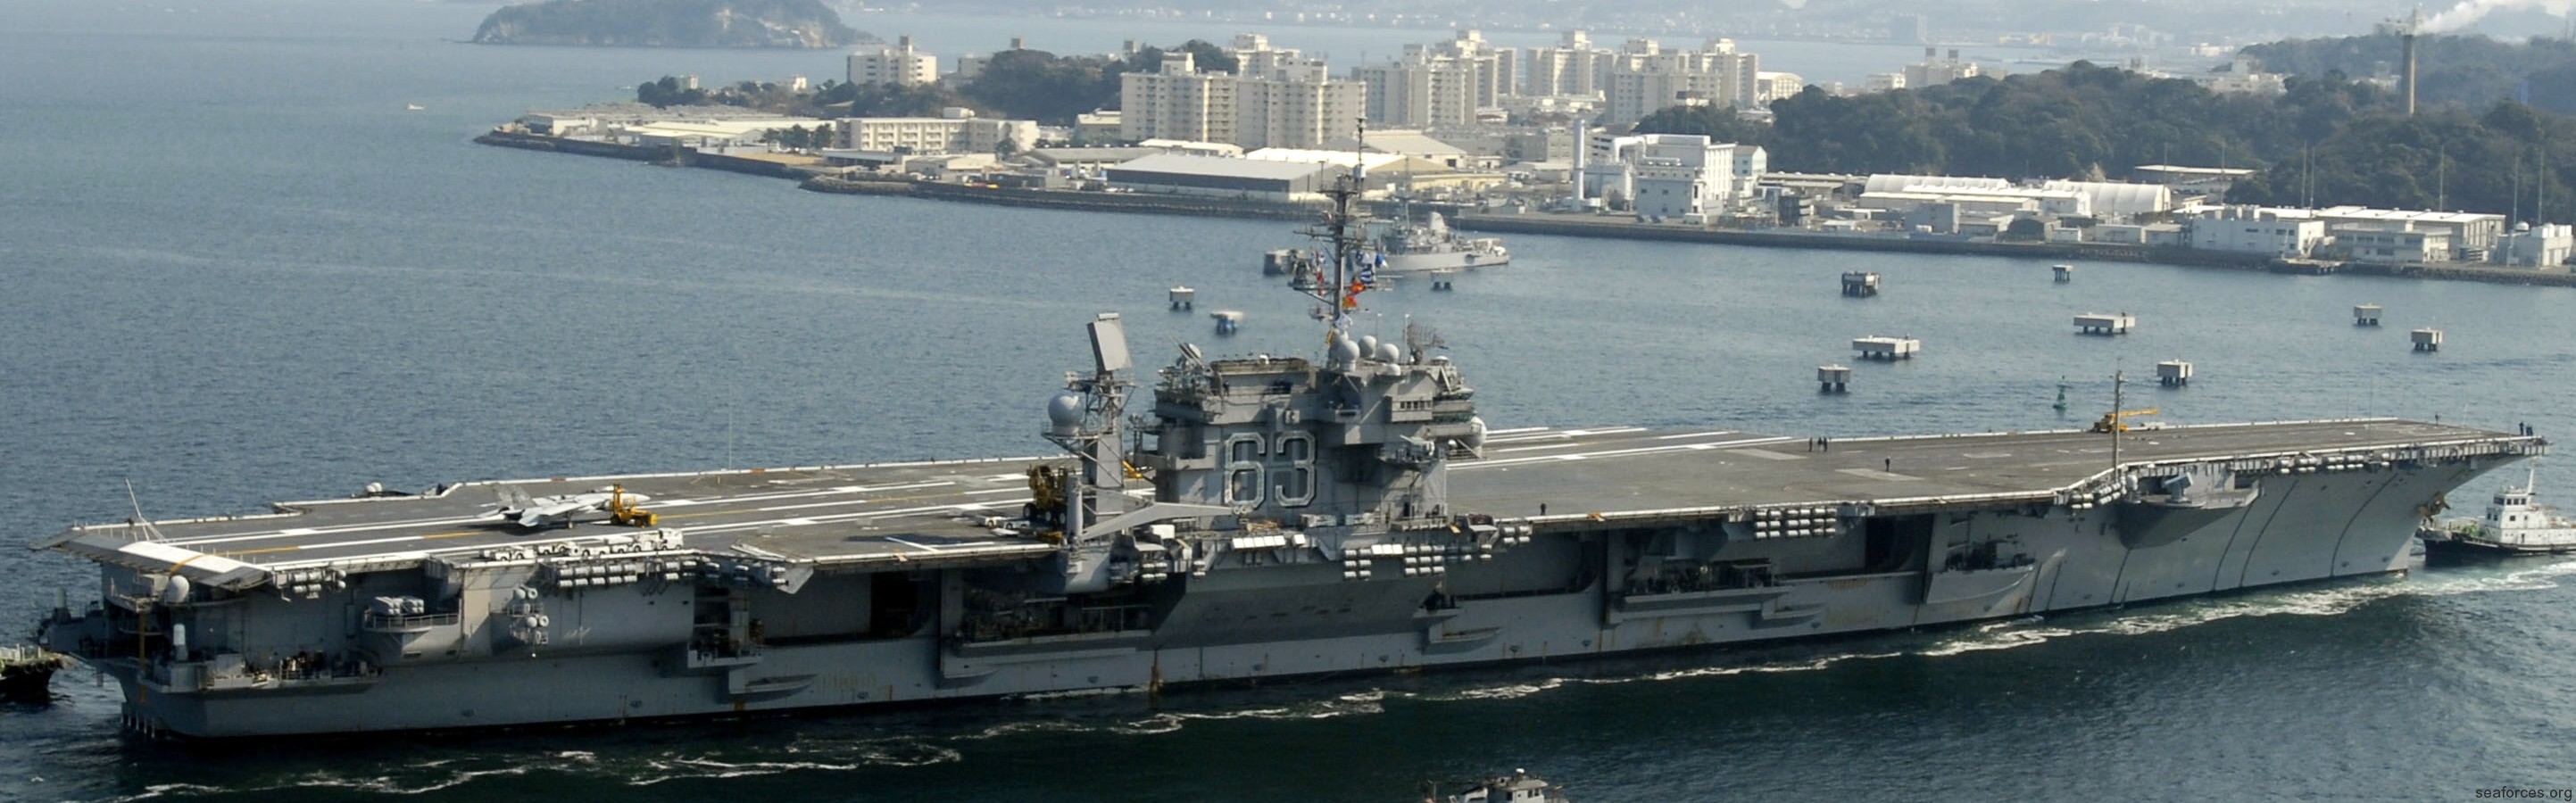 cv-63 uss kitty hawk aircraft carrier 76